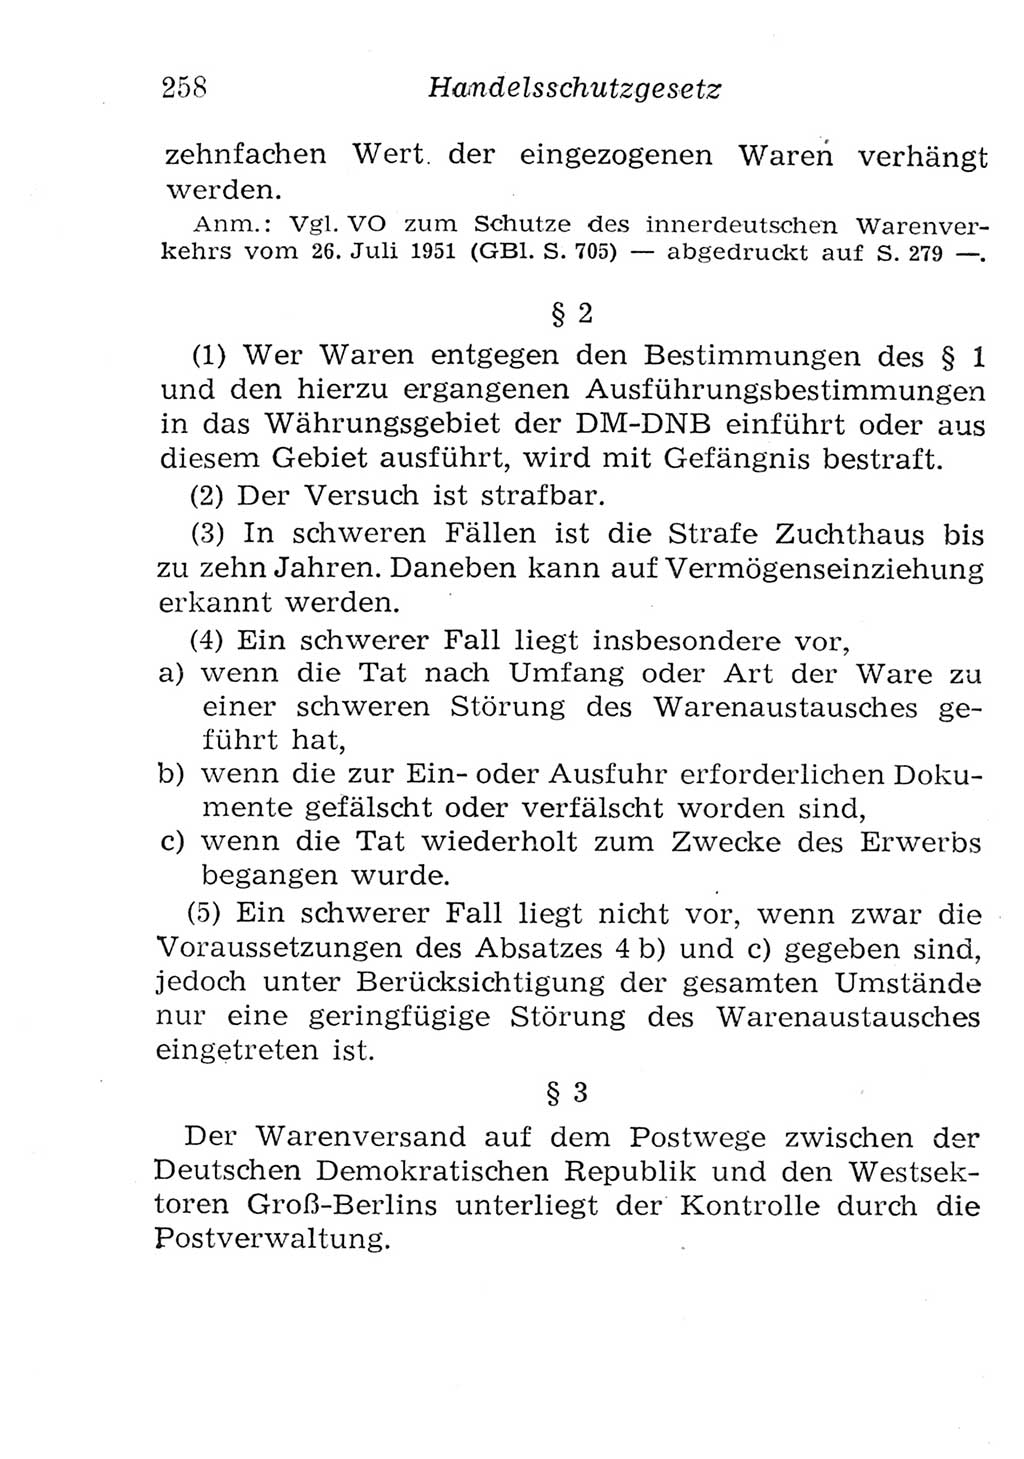 Strafgesetzbuch (StGB) und andere Strafgesetze [Deutsche Demokratische Republik (DDR)] 1957, Seite 258 (StGB Strafges. DDR 1957, S. 258)